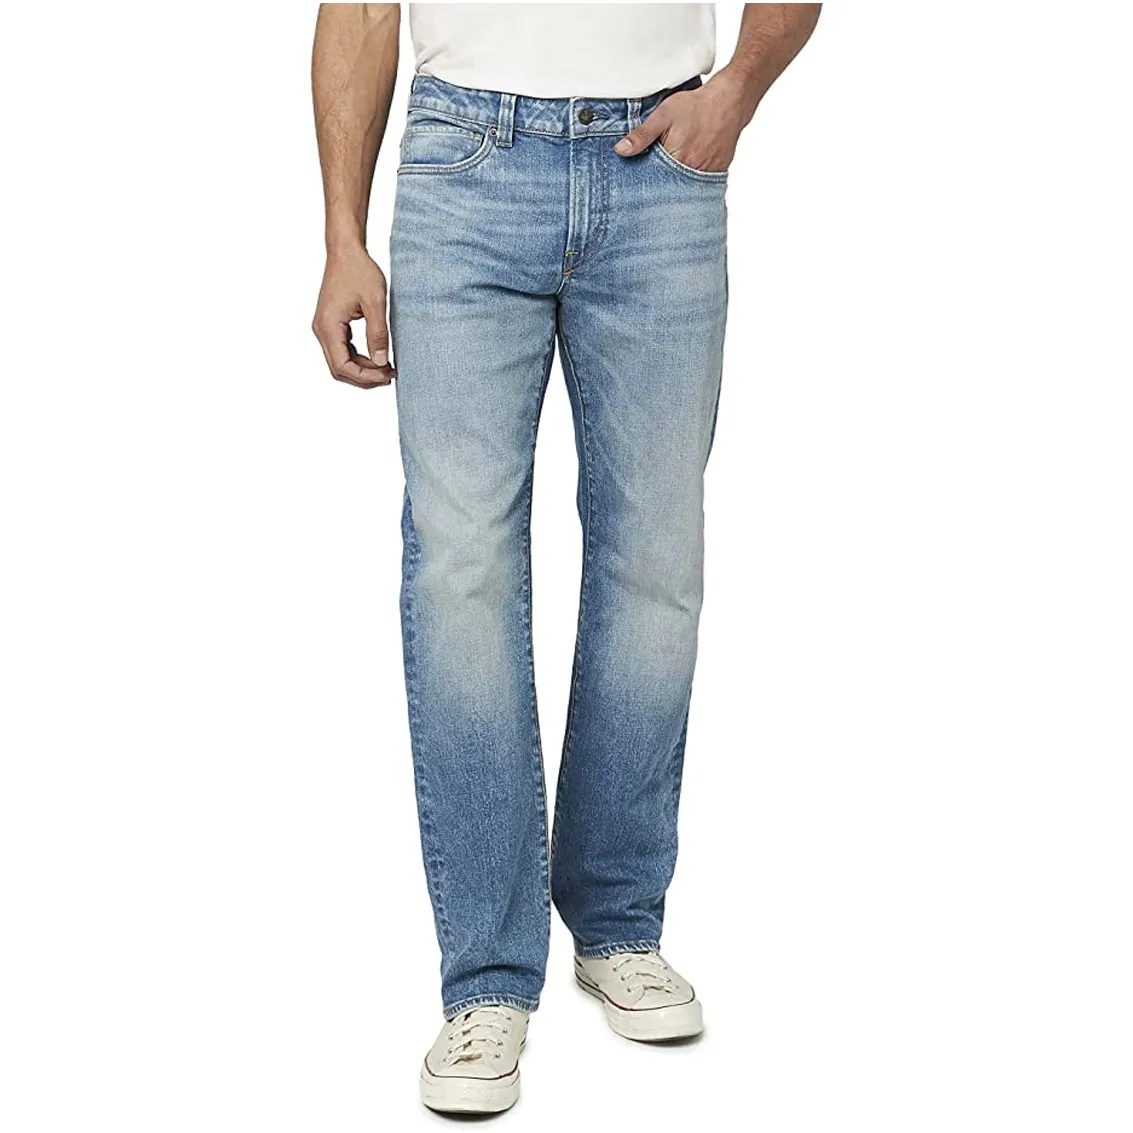 Pabrikan Jeans bordir kustom celana kargo Denim lurus pria merek gaya Jepang meruncing celana Jeans pengendara sepeda